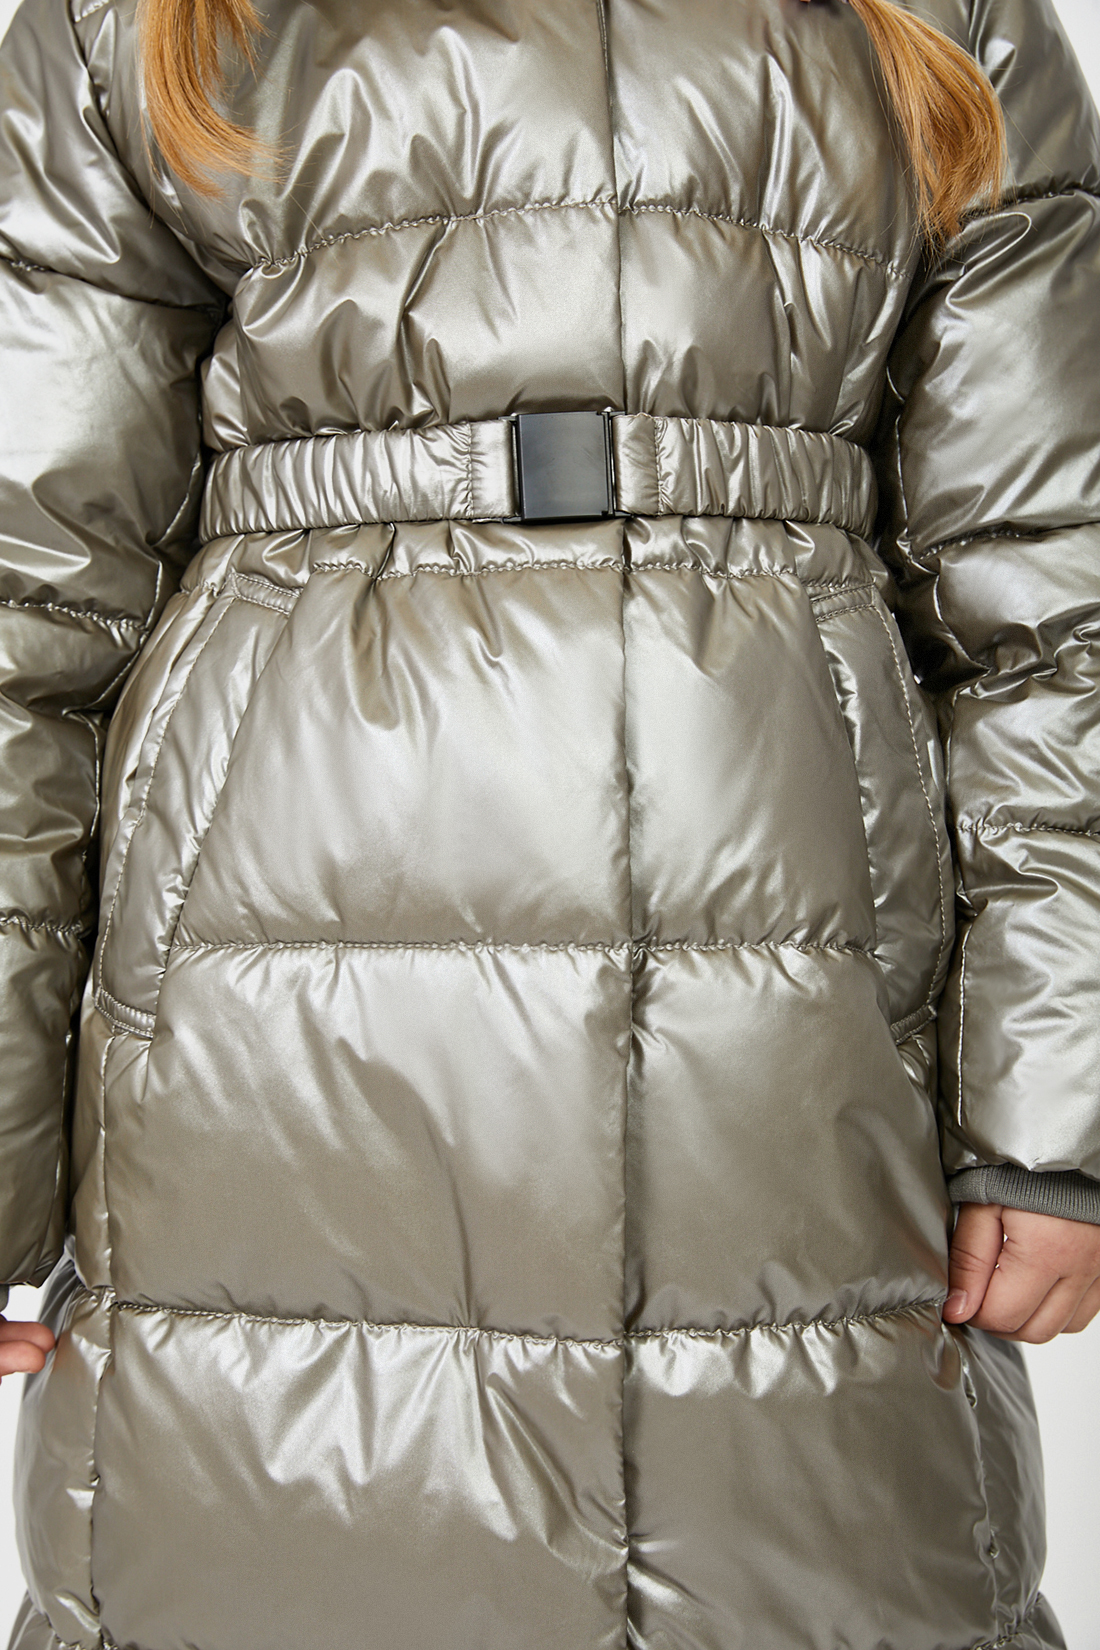 Куртка (Эко пух) (арт. baon BK041807), размер 122, цвет серый Куртка (Эко пух) (арт. baon BK041807) - фото 3